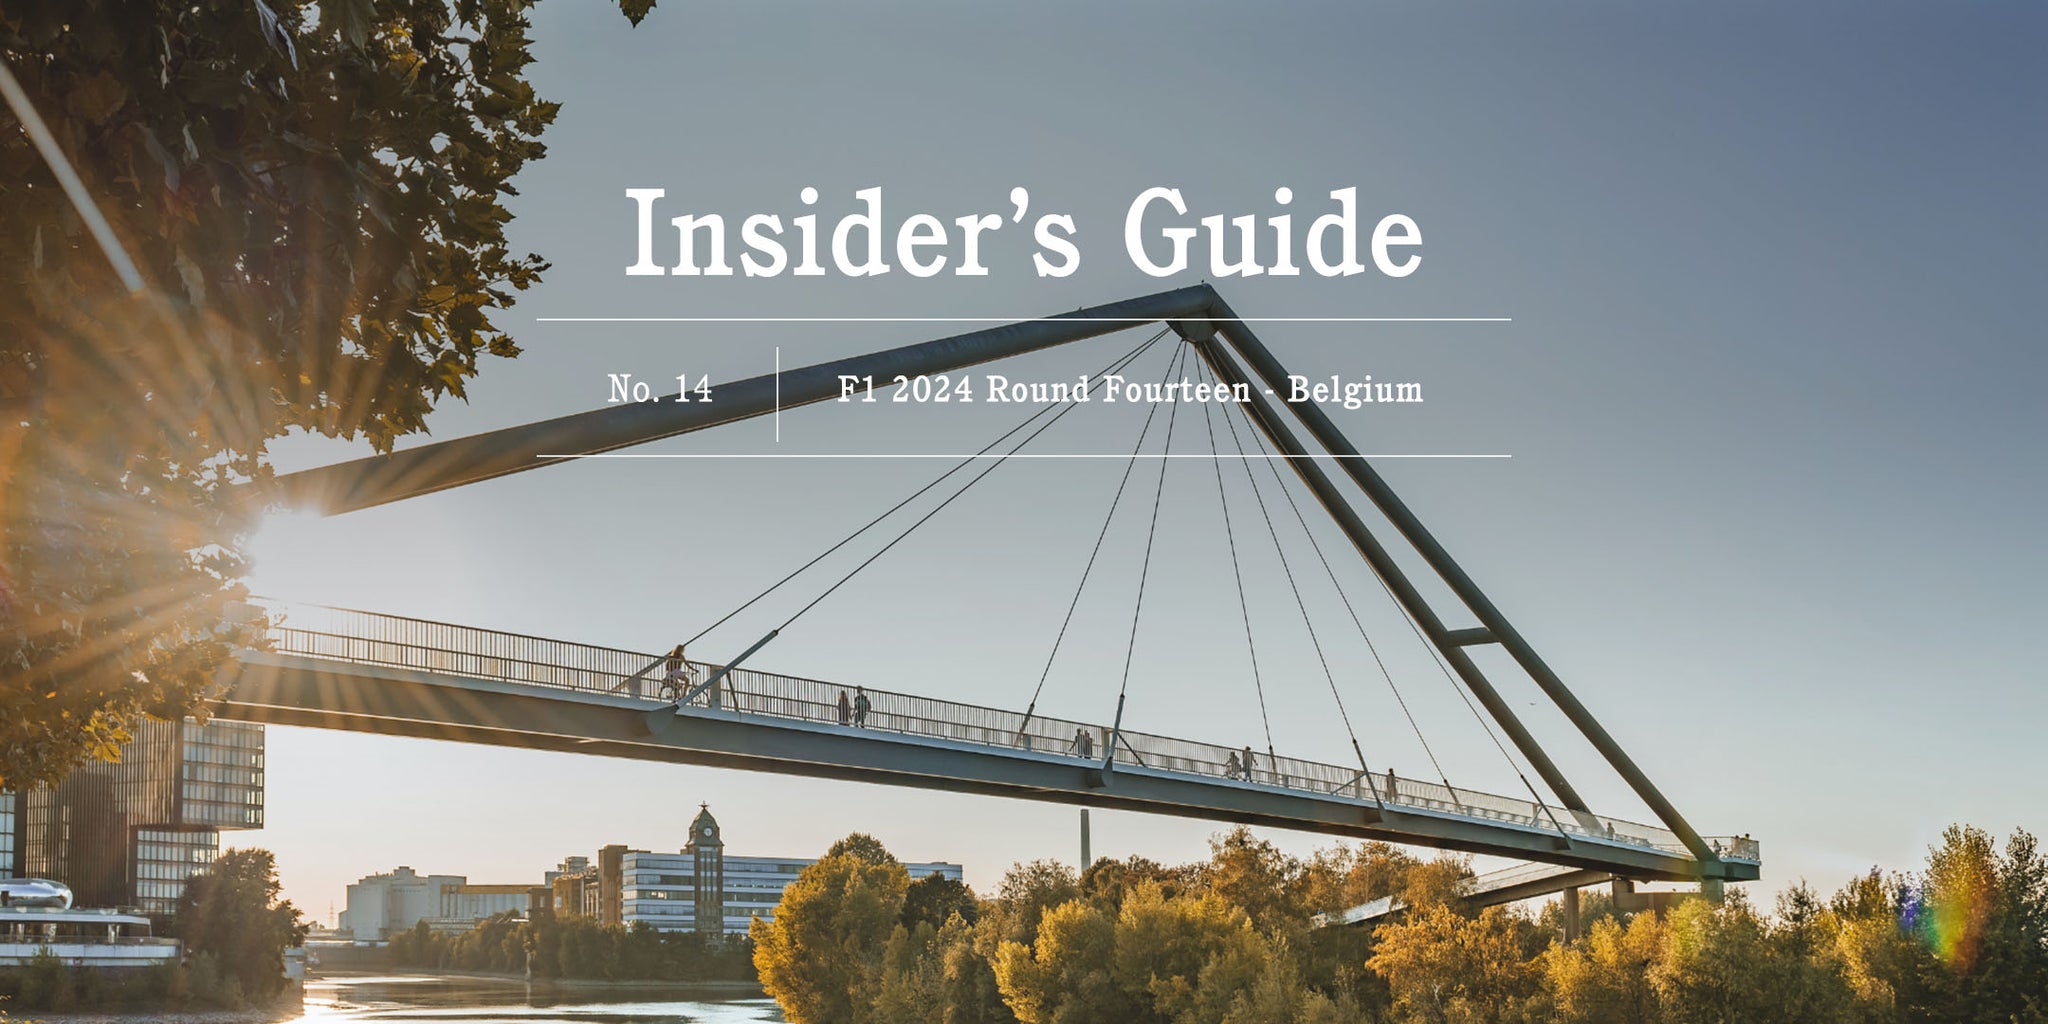 F1 2024 Insider's Guide No. 14 – Belgium